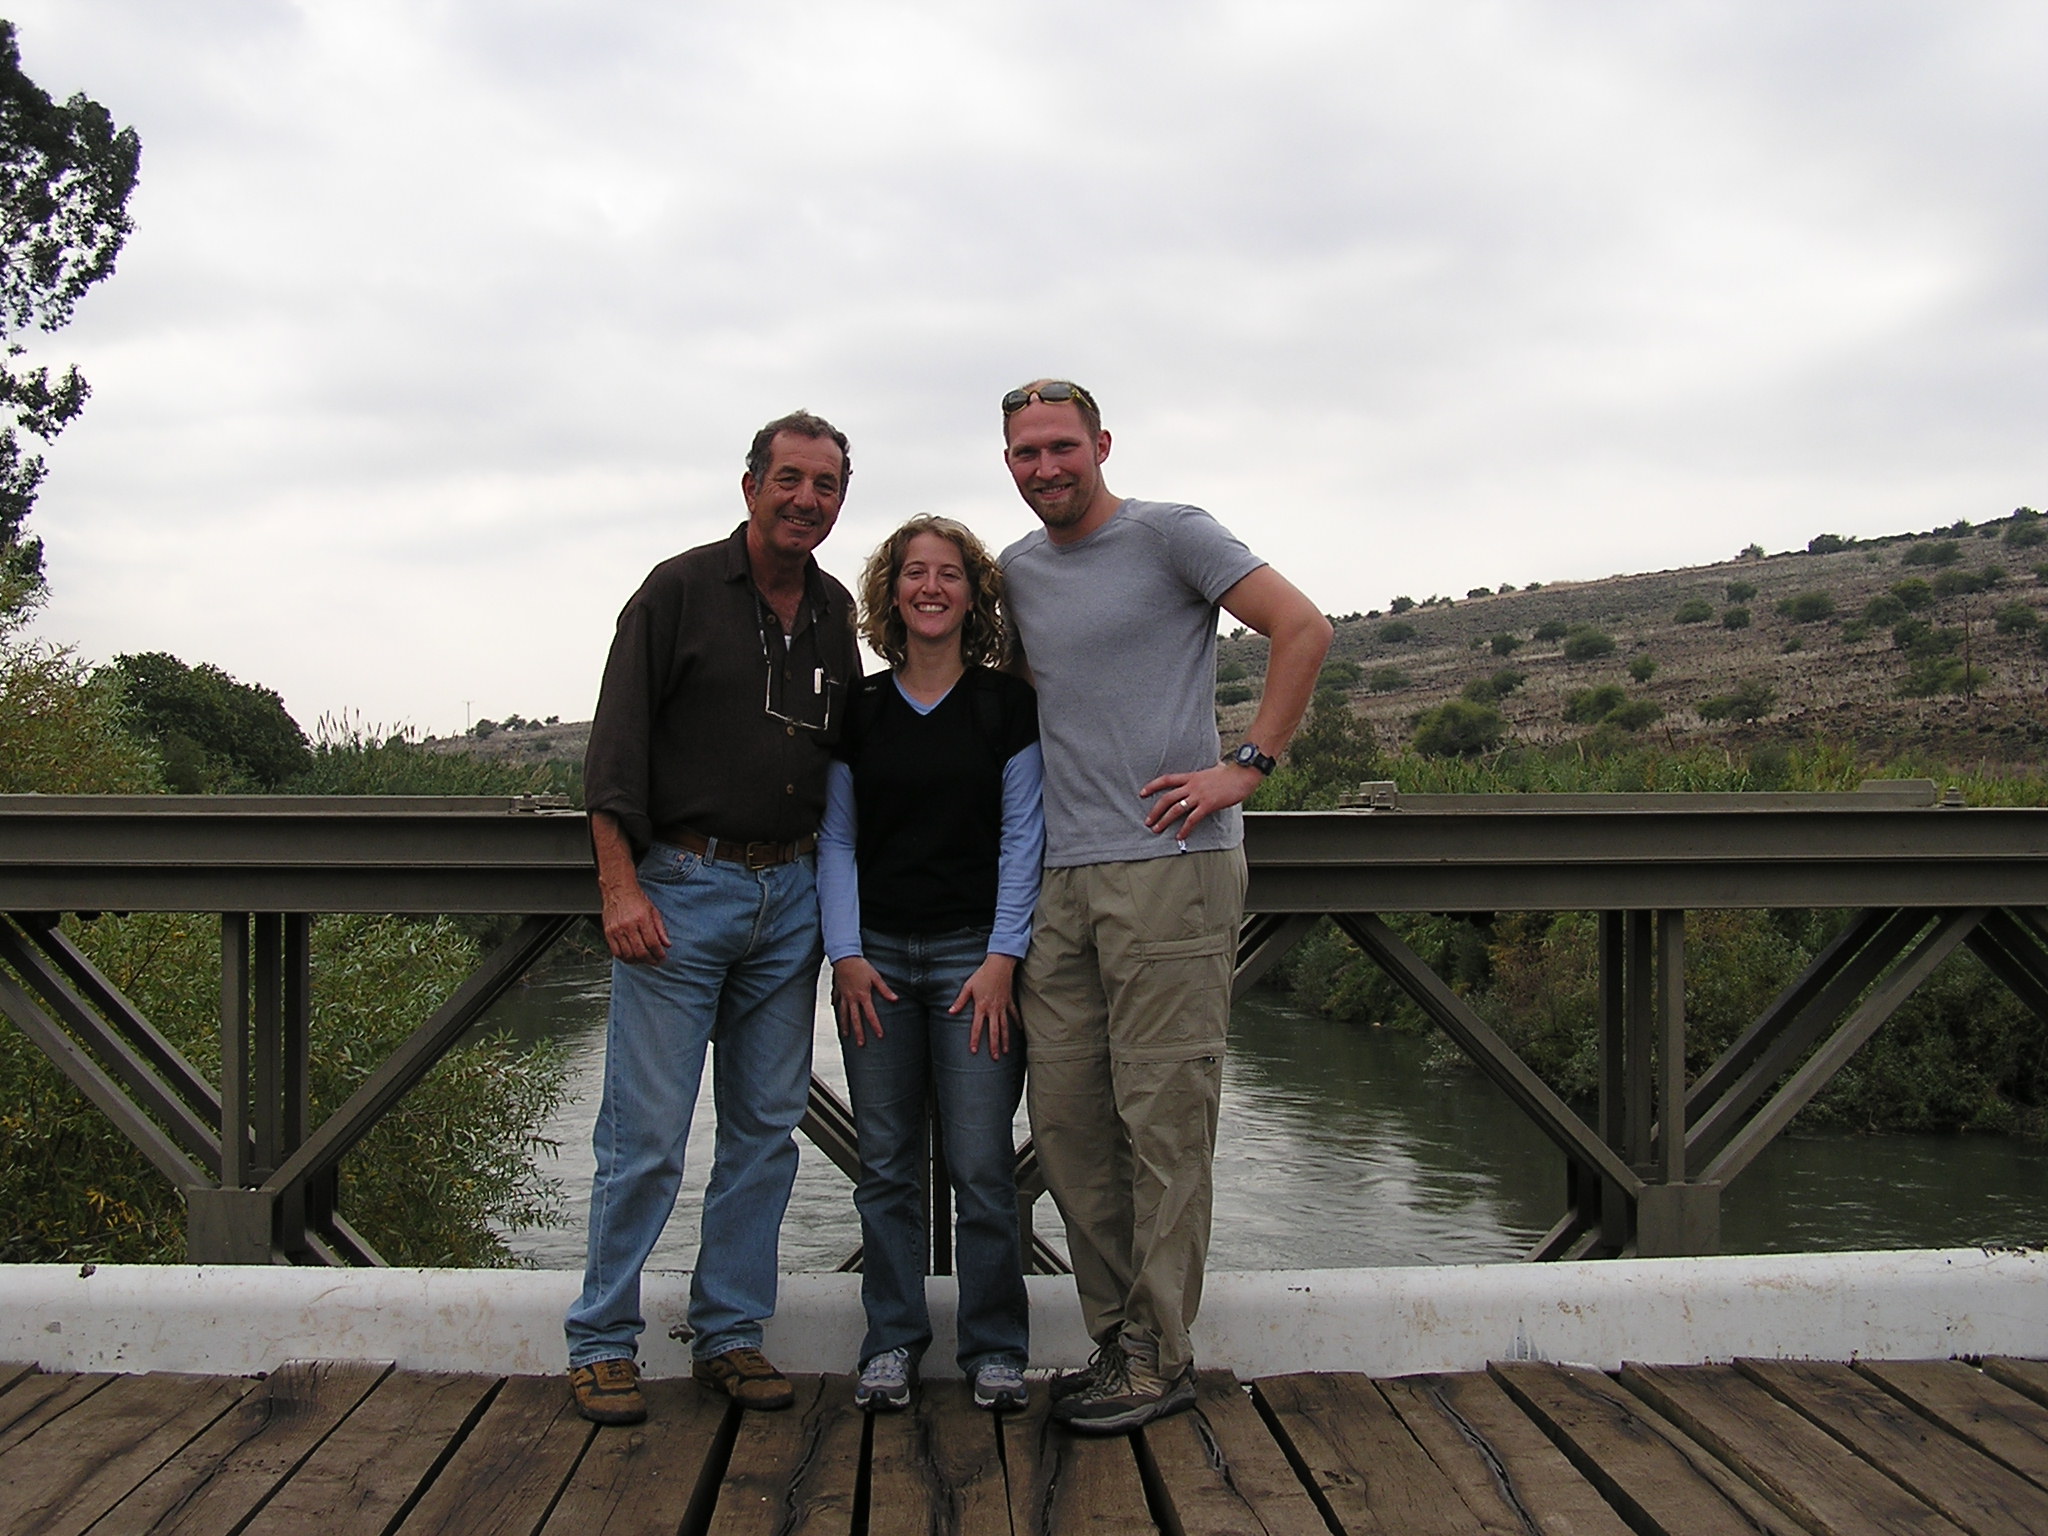 Jordan River shot with tour guide Joram